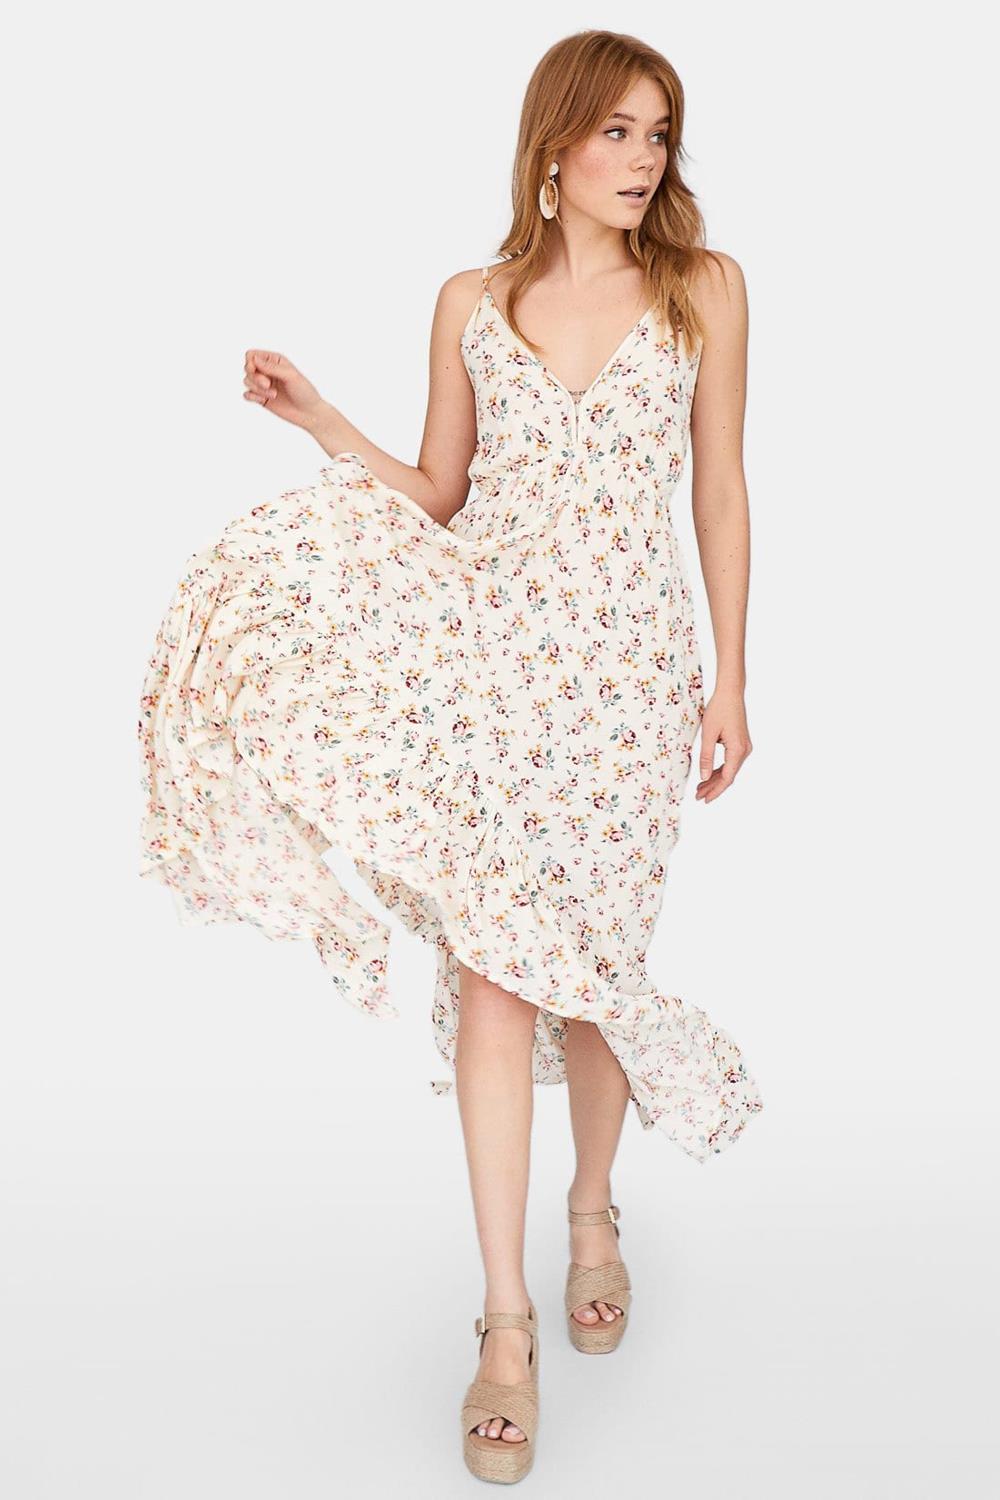 estilo boho verano 2019 vestido stradivarius 25,99€